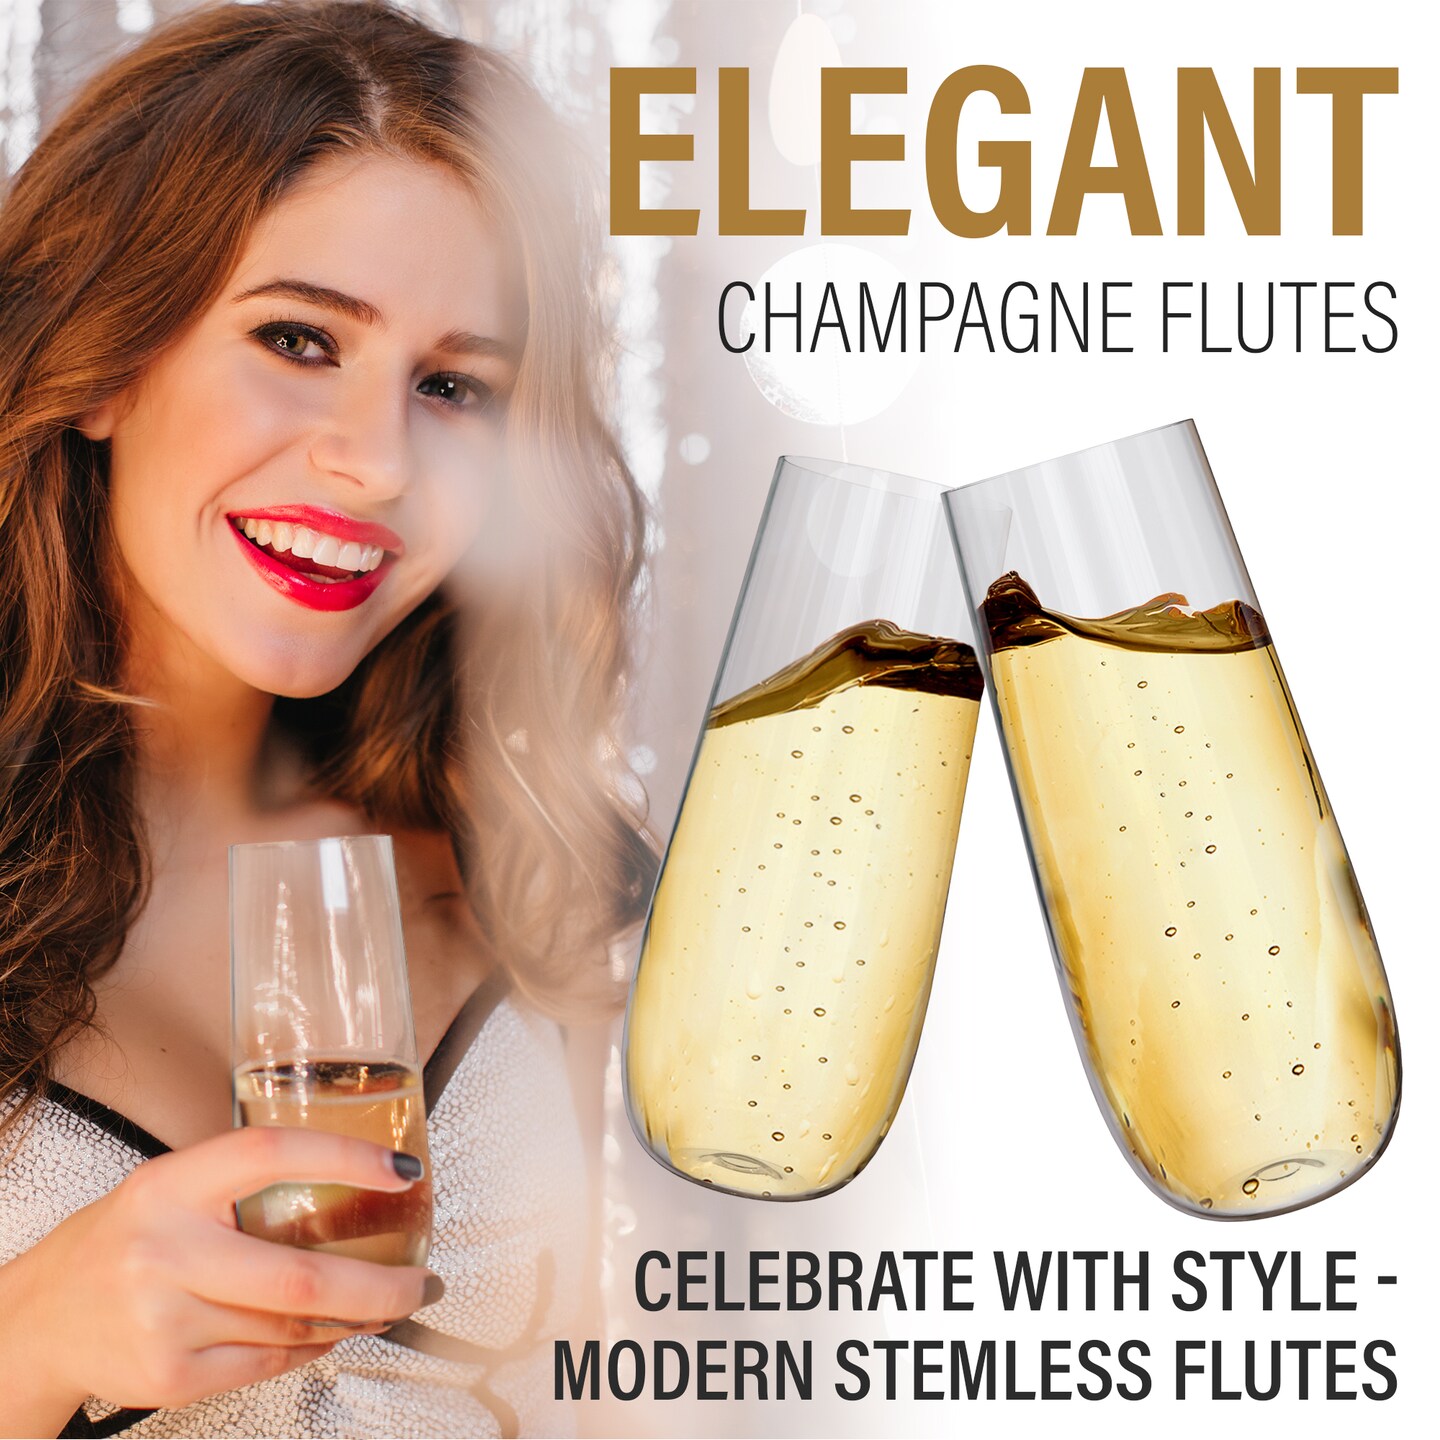 8 oz. Personalized Fiancé Reusable Glass Champagne Flute Set - 2 Ct.